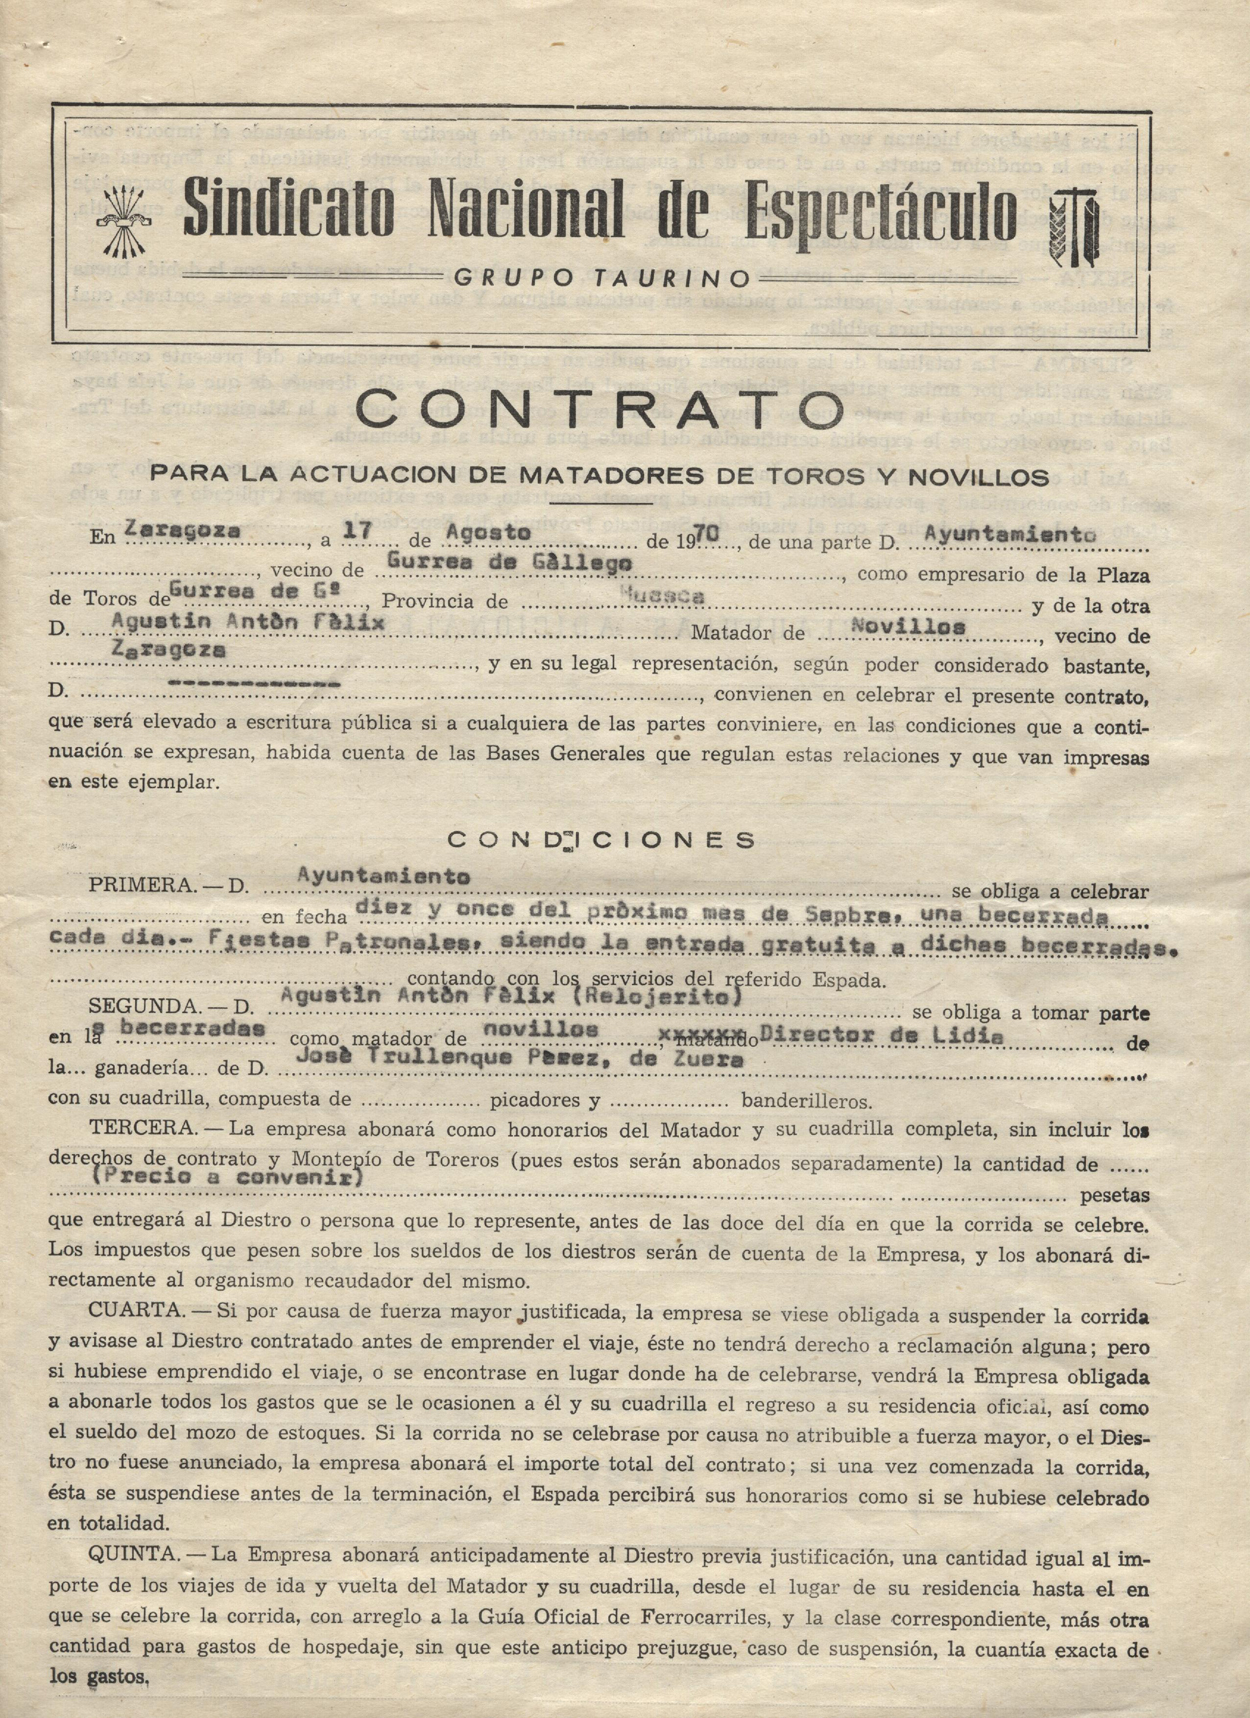 Contrato de trabajo entre el Ayuntamiento de Gurrea de Gállego y el novillero Agustín Antón Félix, alias Relojerito